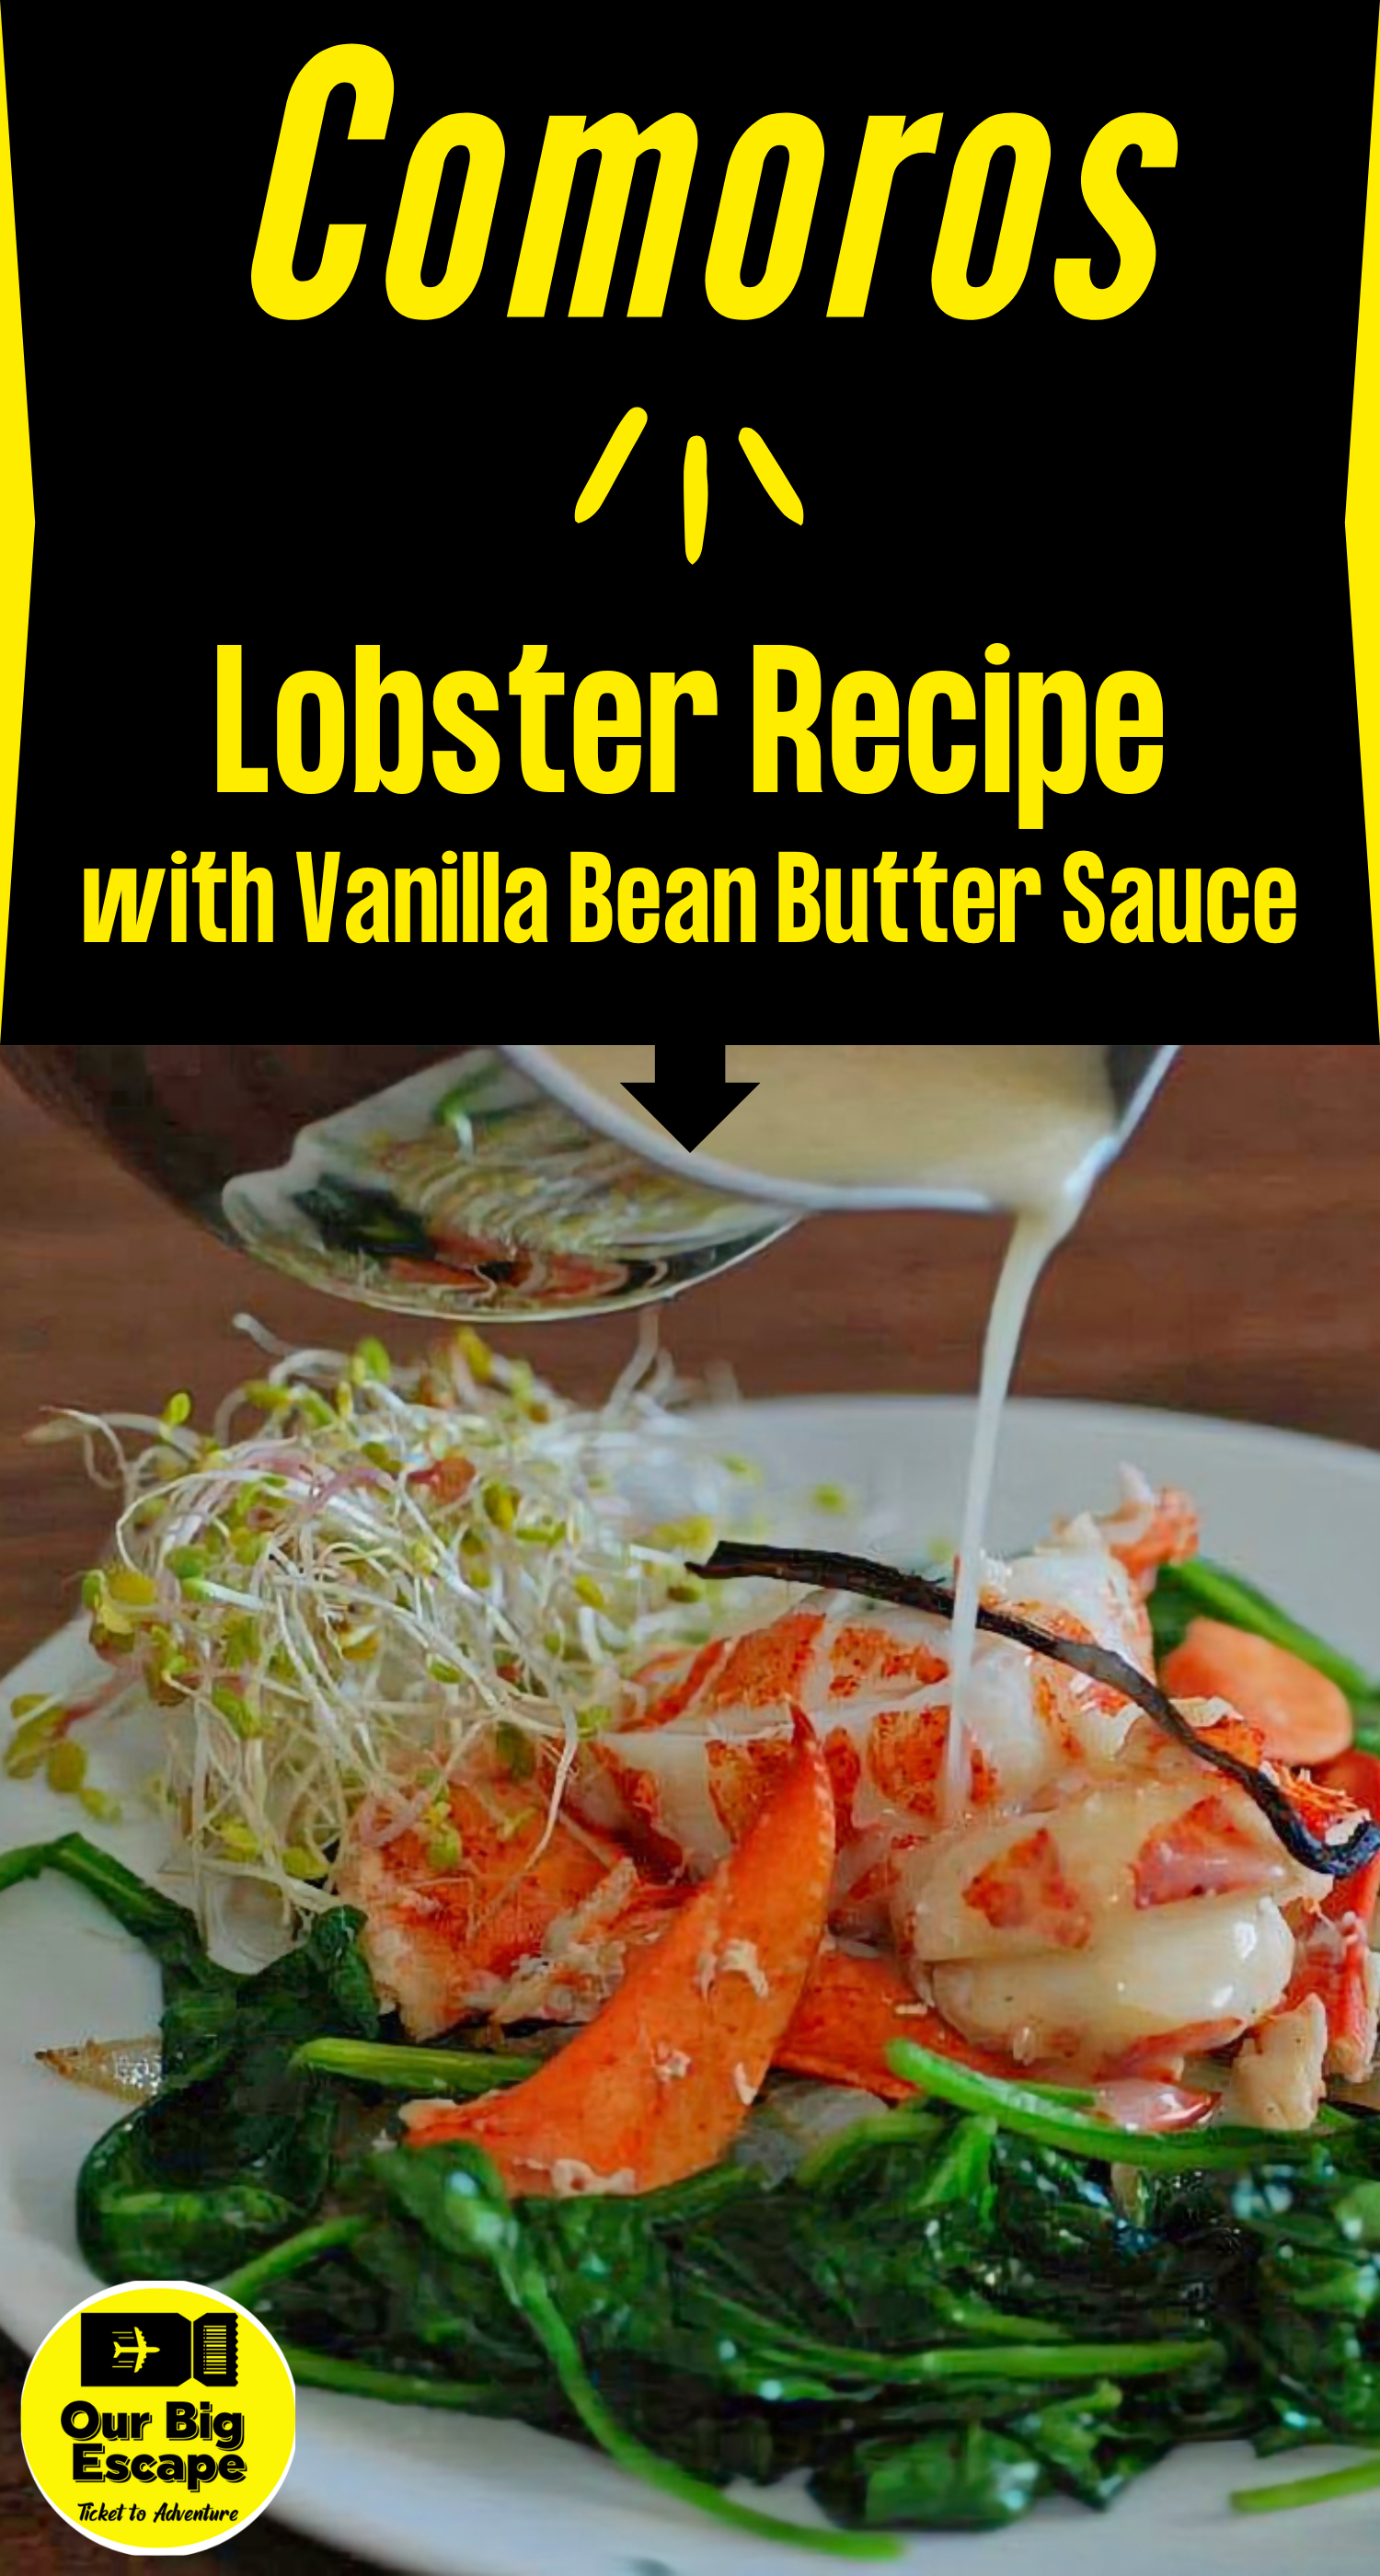 Comoros - Lobster Recipe with Vanilla Bean Butter Sauce